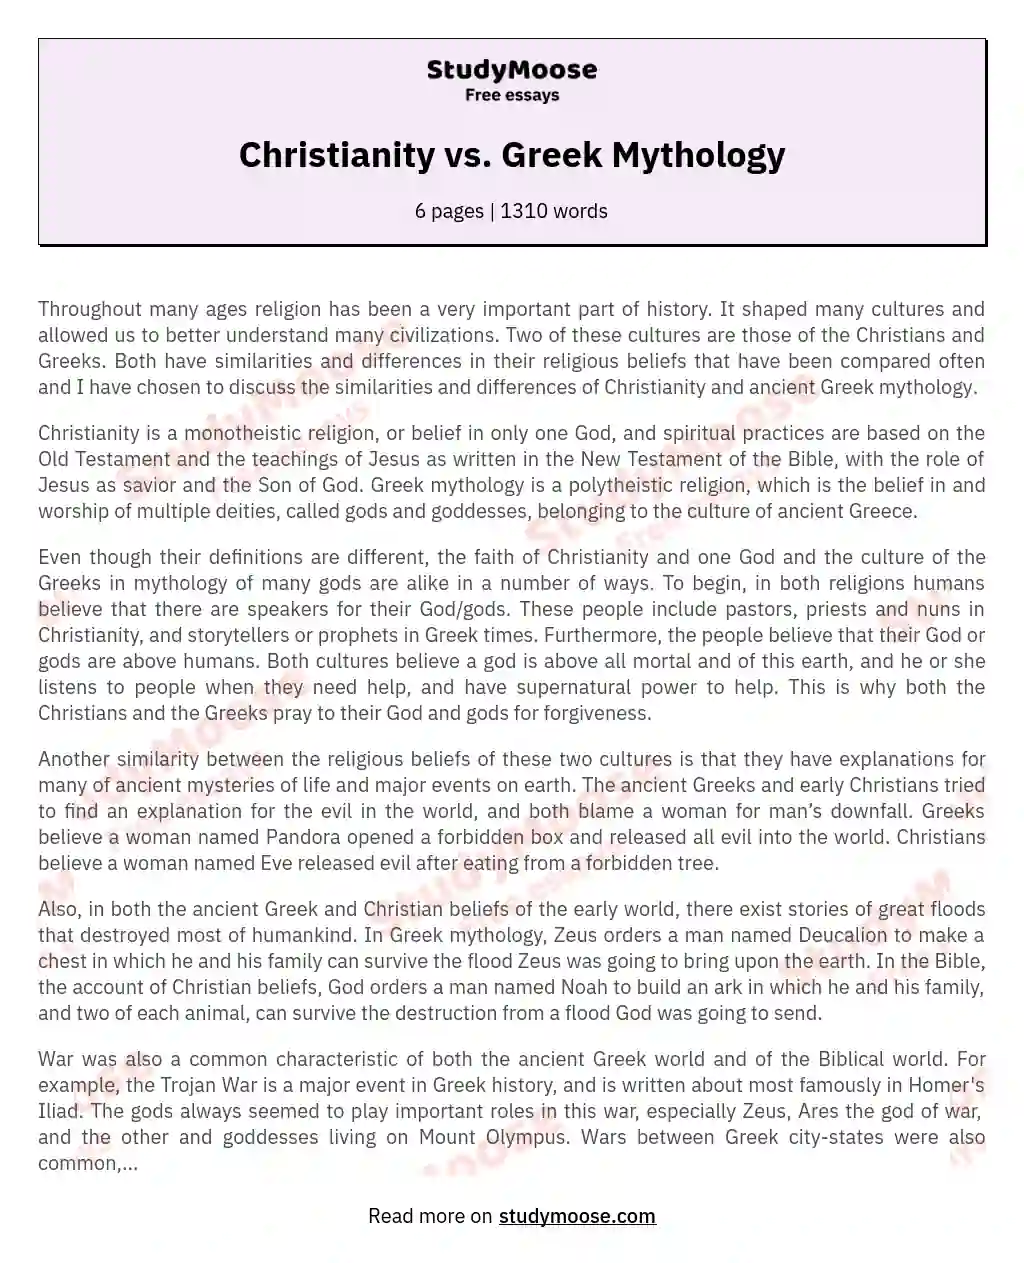 Christianity vs. Greek Mythology essay